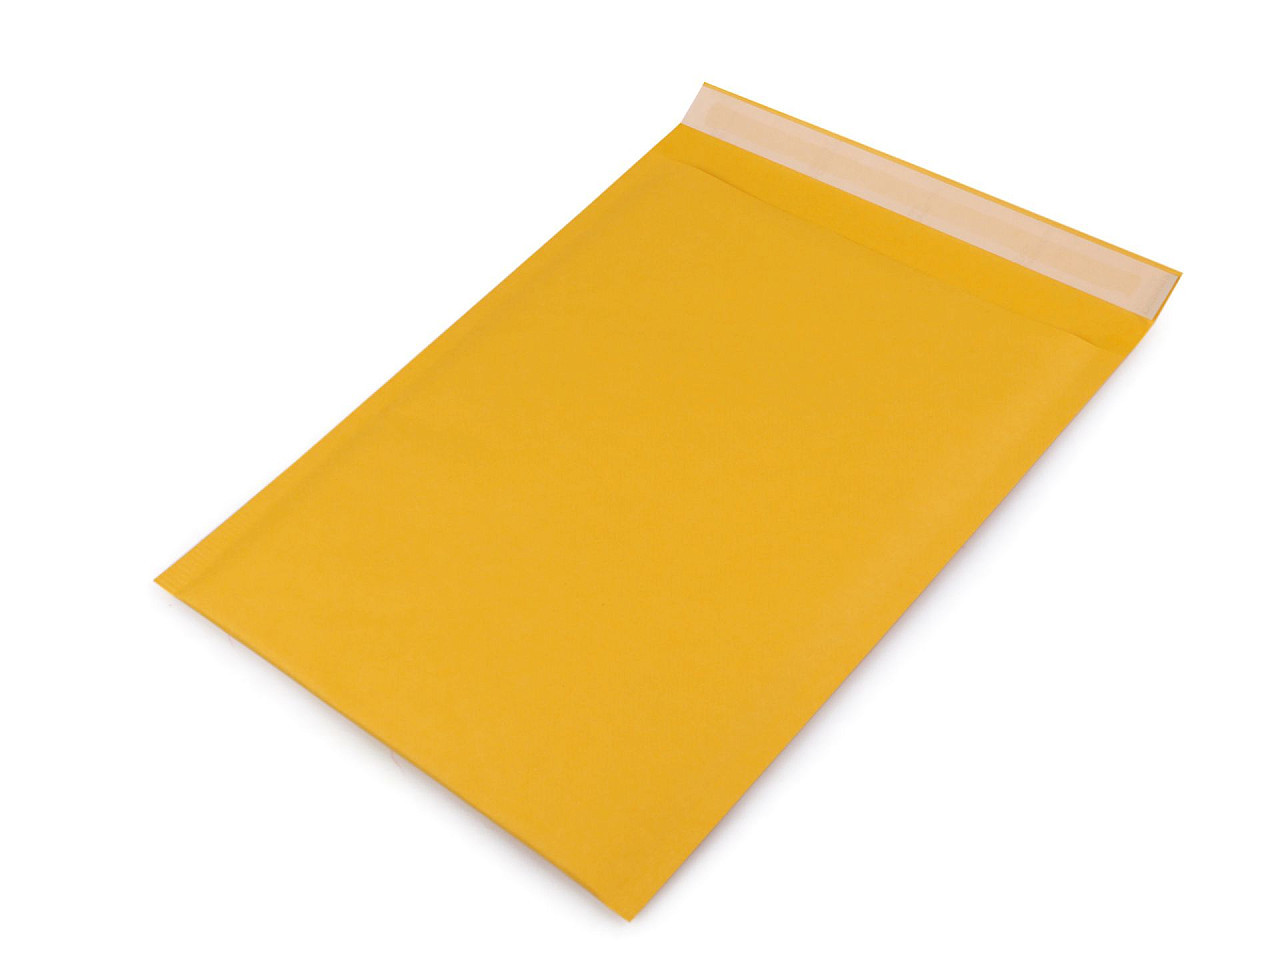 Pevná papírová obálka 19x25 cm s bublinkovou fólií uvnitř, barva žlutá